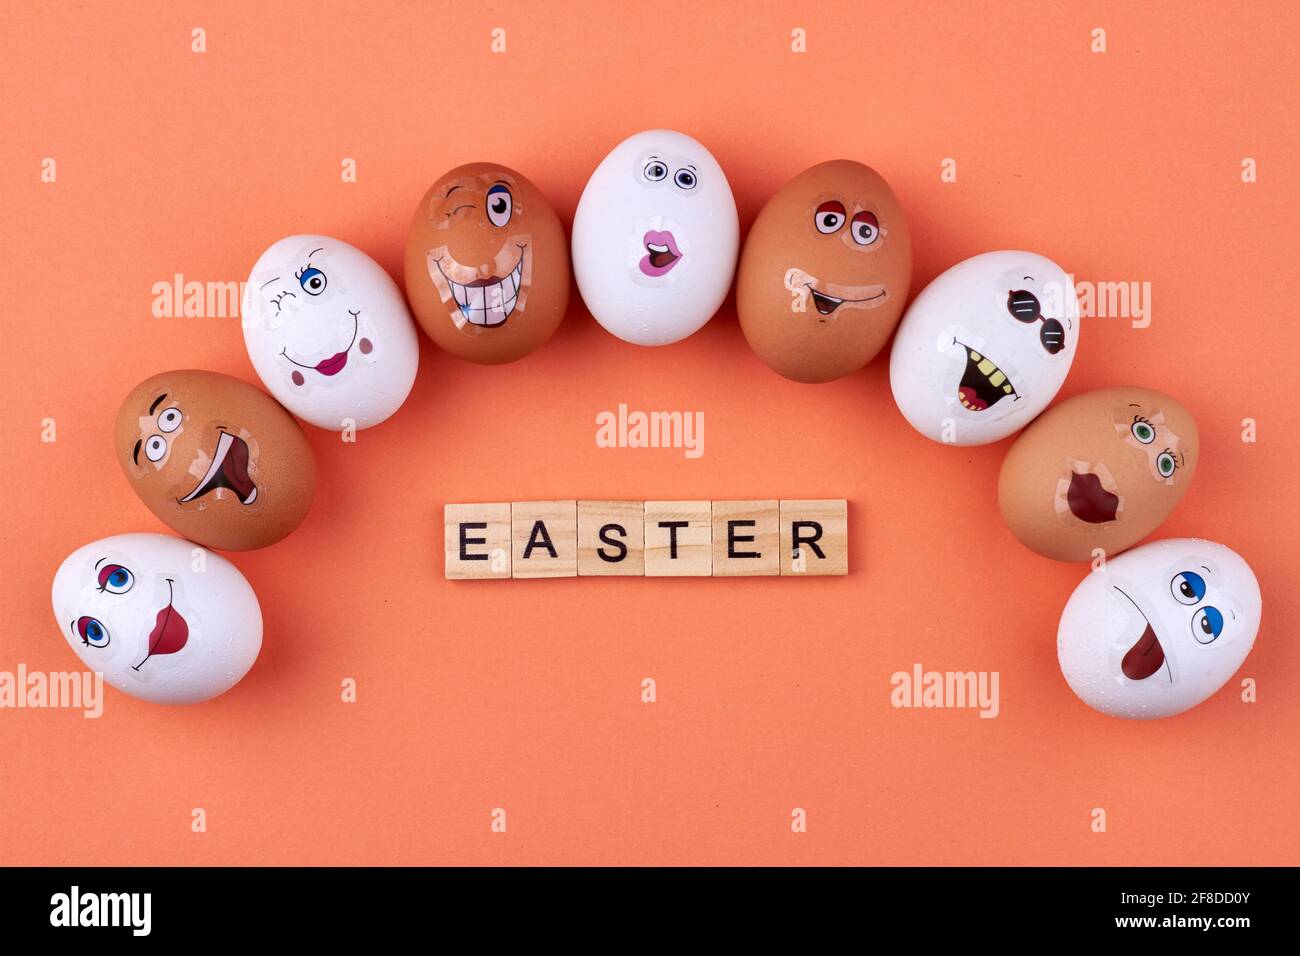 Weiße und braune Eier mit Smiley-Gesichtern. Stockfoto